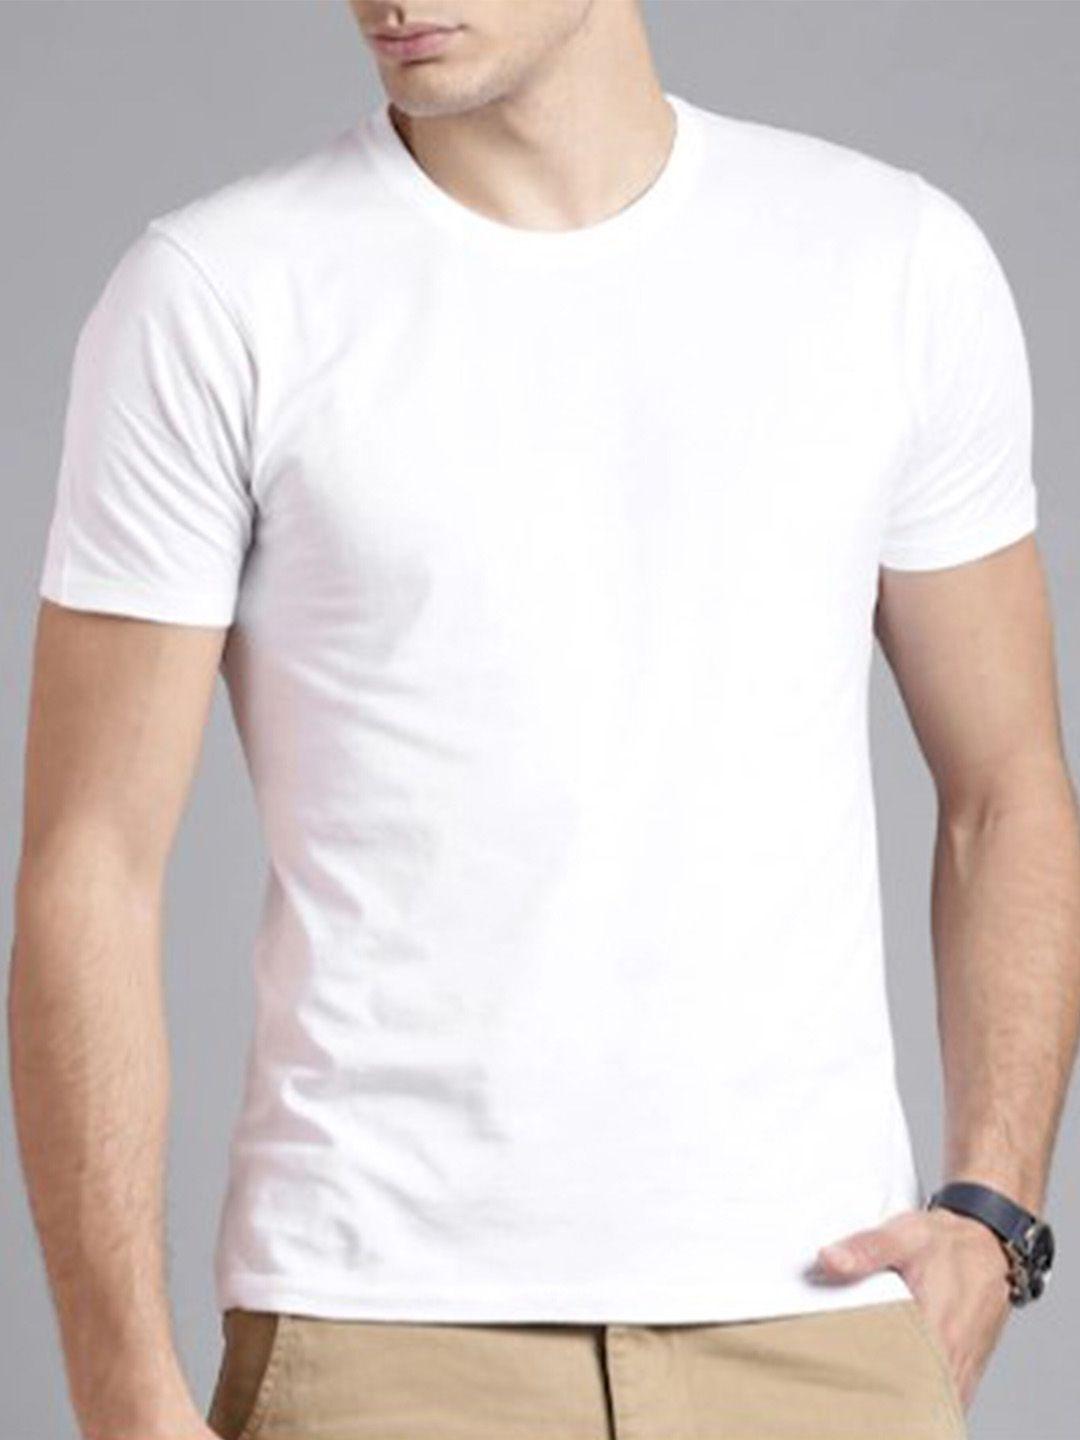 kaezri men white v-neck raw edge t-shirt